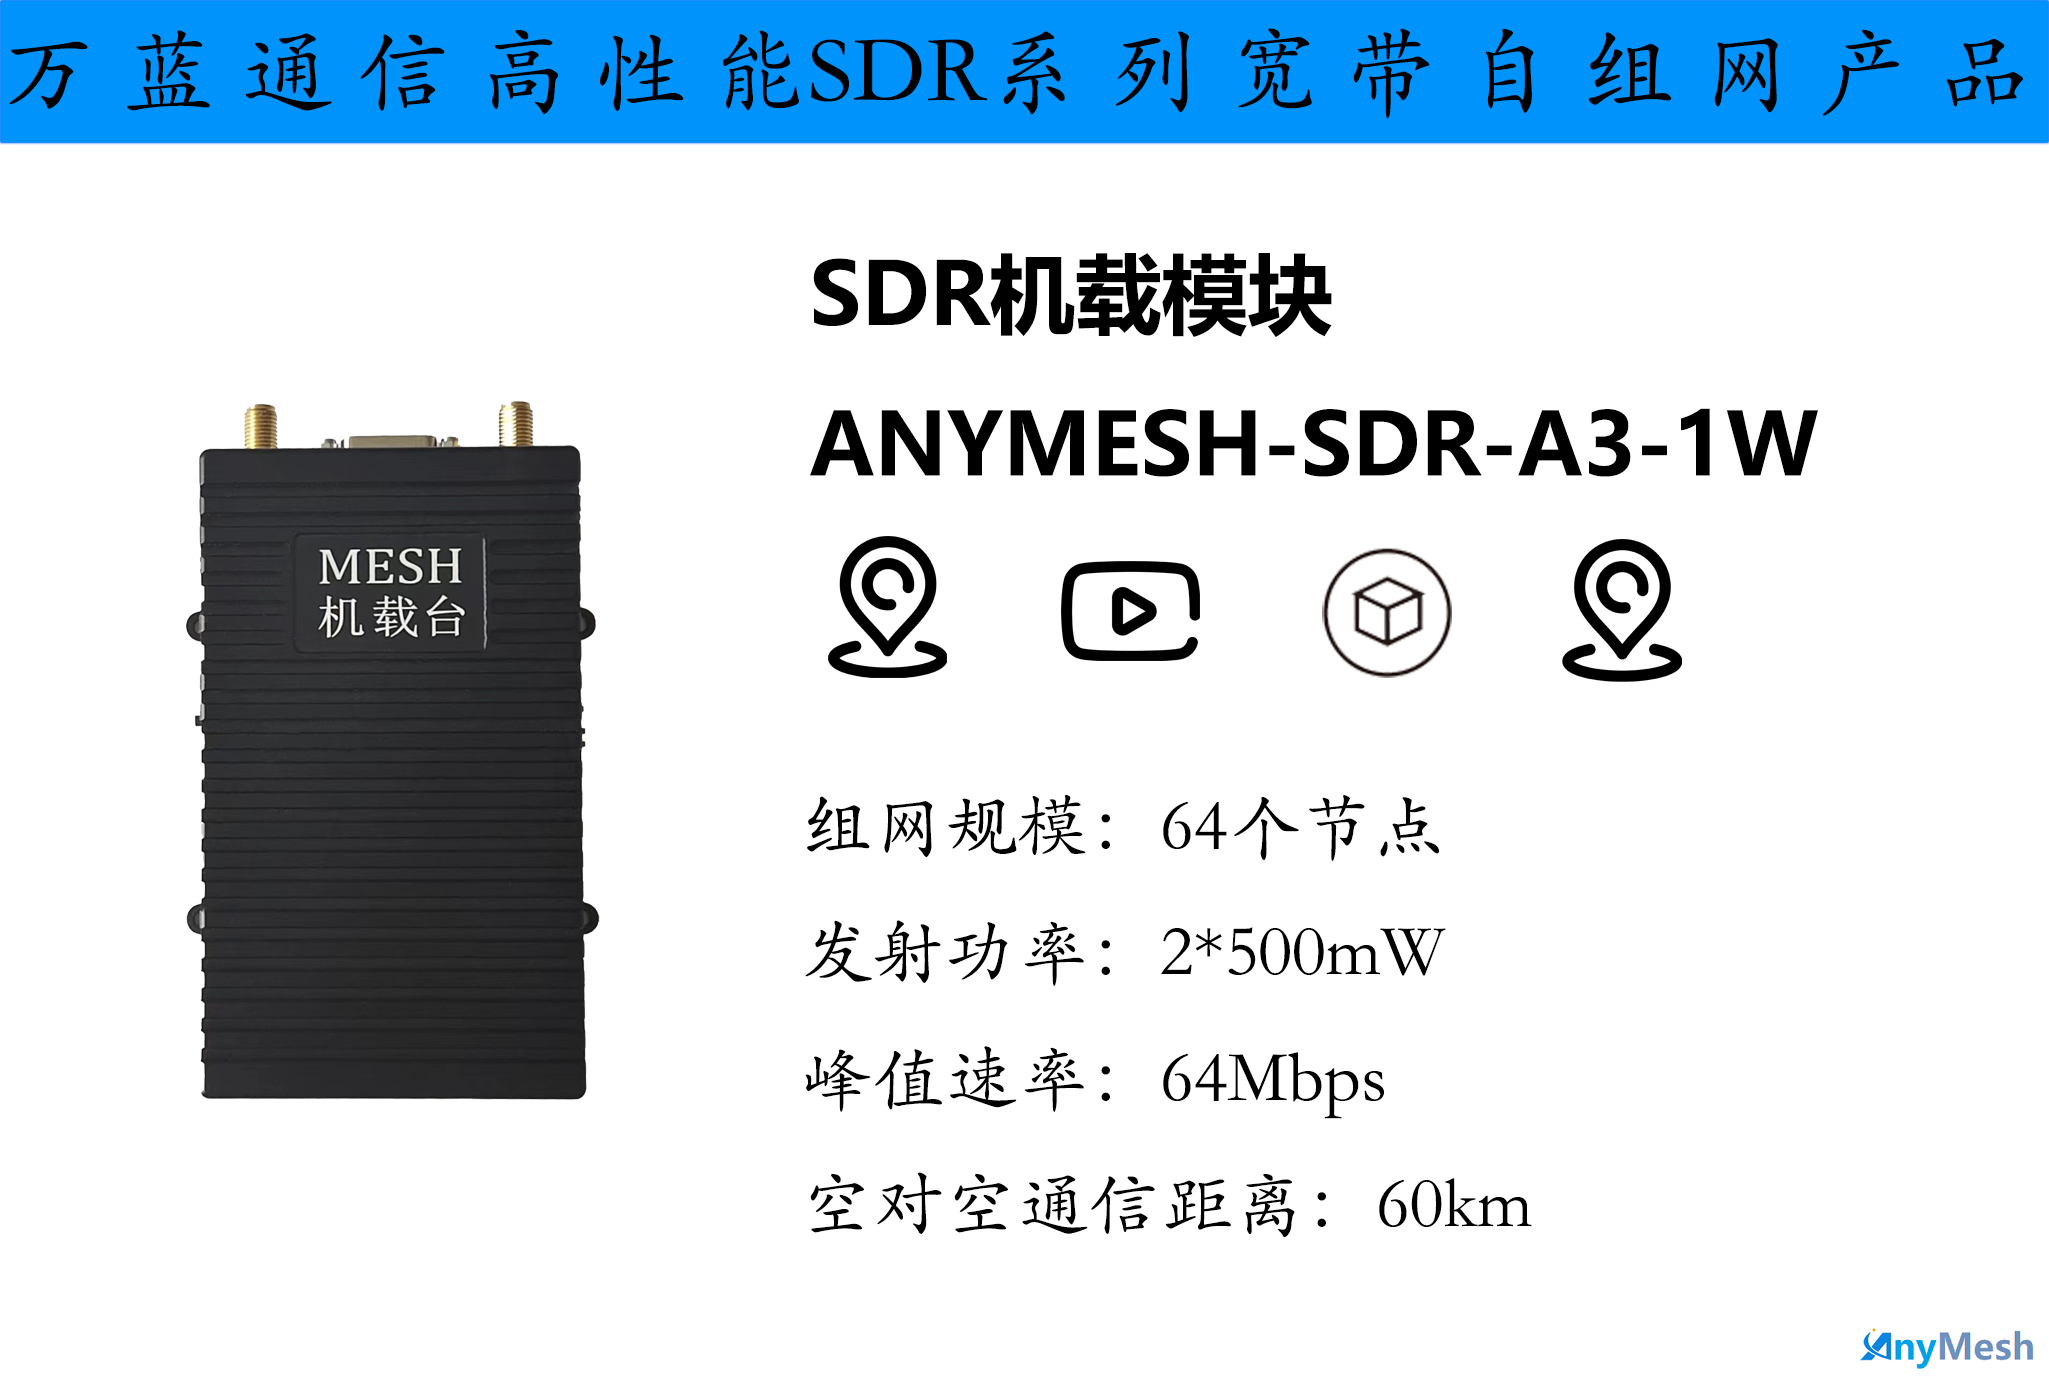 ANYMESH-SDR-A3-1W 机载型航空自组网电台 机载MESH电台